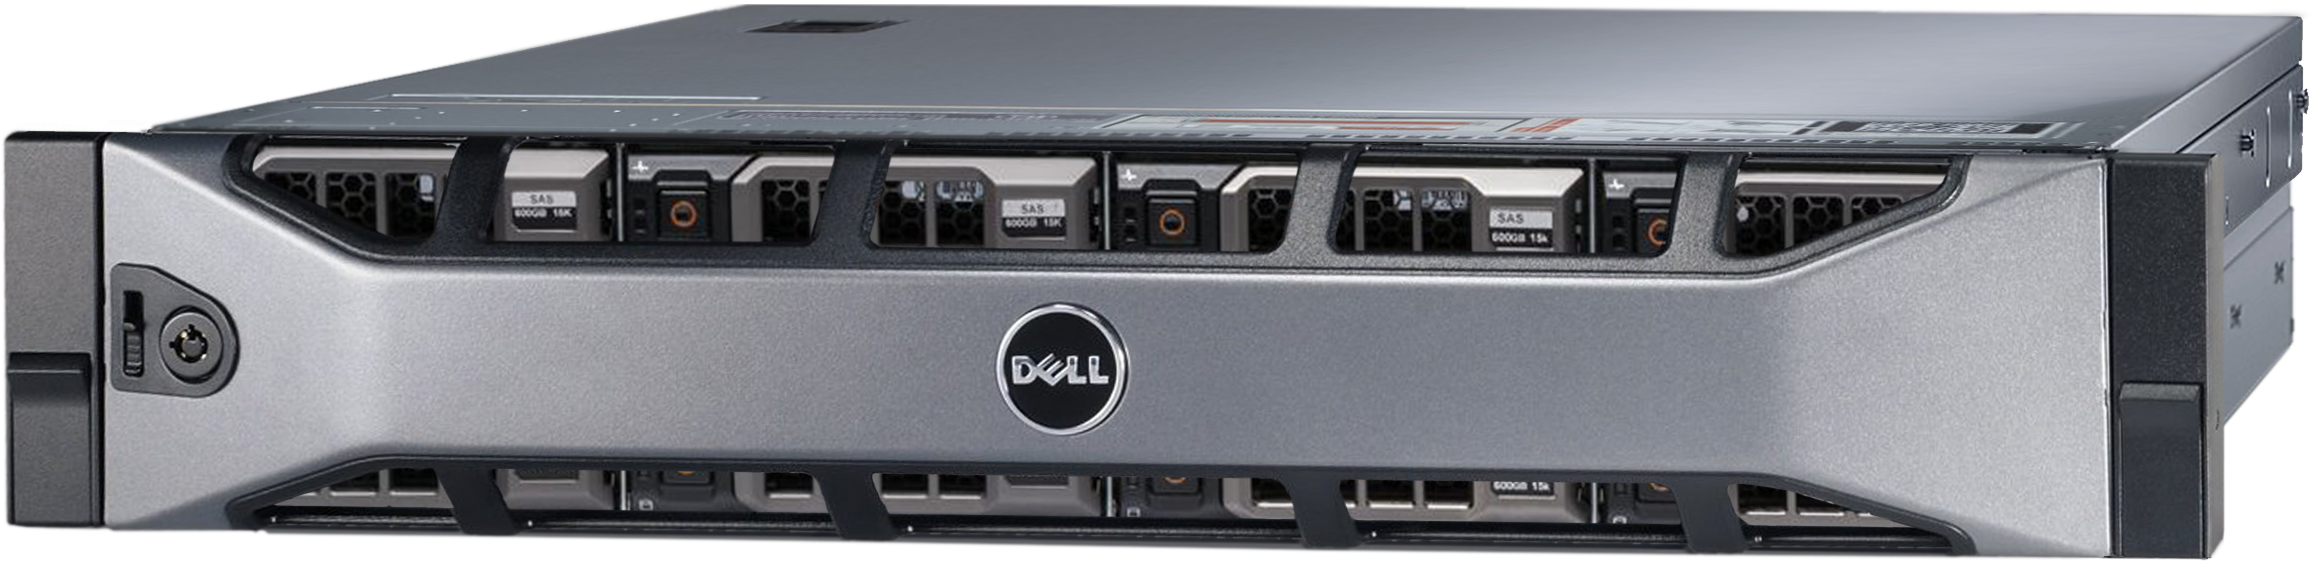 Аренда физического сервера DELL R720xd / 2 × E5-2620 v2 / 32 GB RAM / 2 x 240 GB SSD / 12 x 10 TB HDD / H310